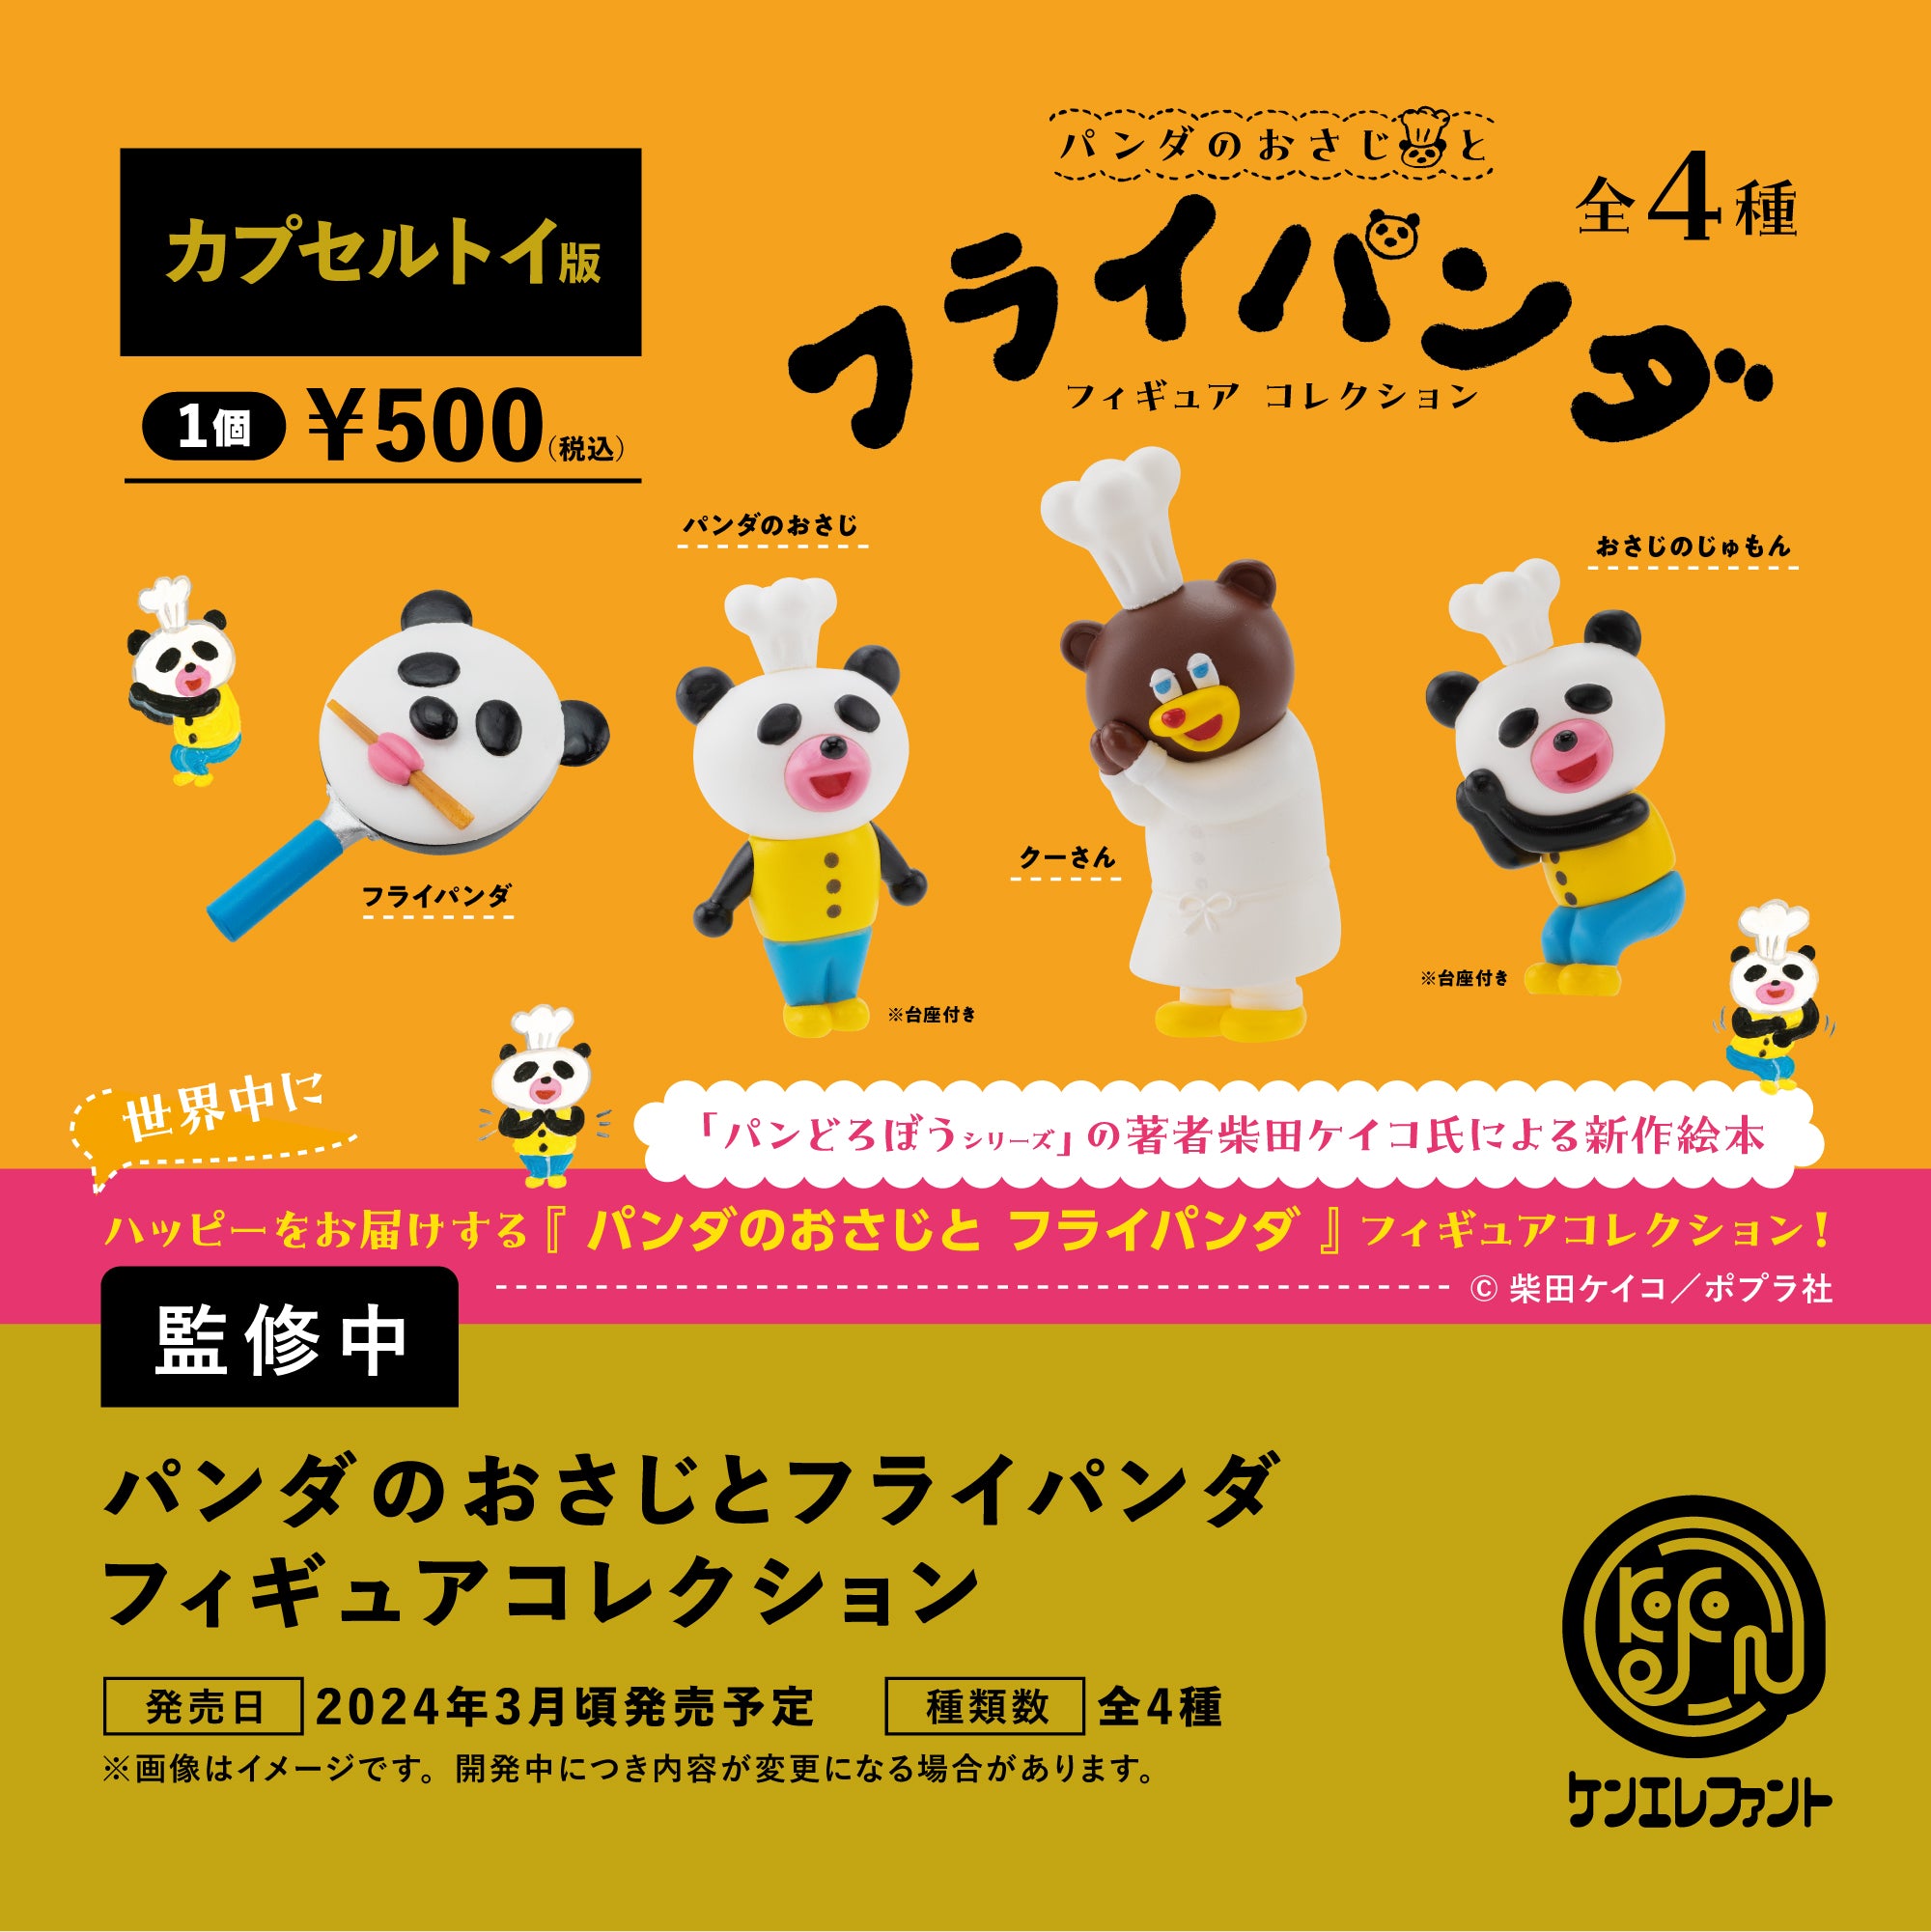 【3月予約】【送料無料】パンダのおさじとフライパンダ フィギュアコレクション 全4種 コンプリート